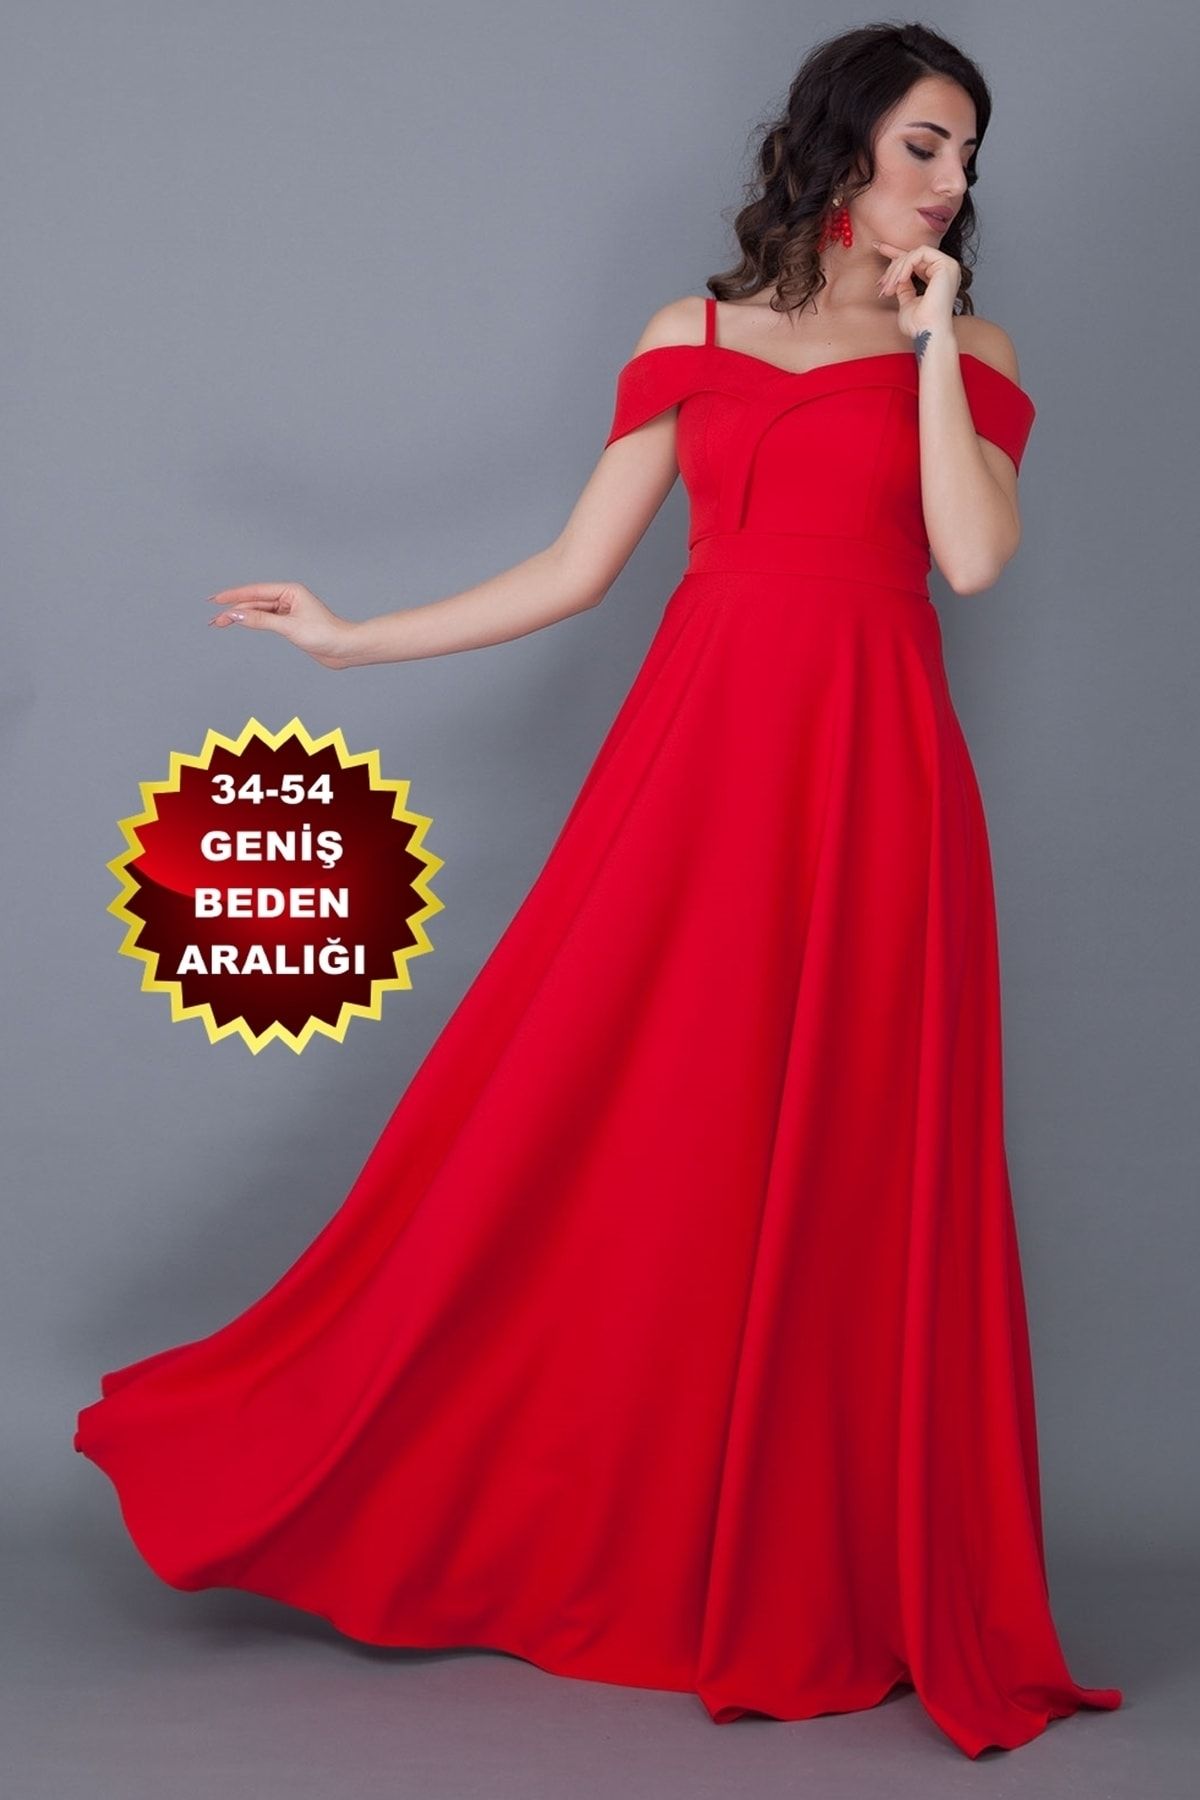 lovebox Kadın Esnek Atlas Kumaş Ince Askılı Düşük Omuz Detaylı Maxi Boy Kırmızı Abiye Elbise 342